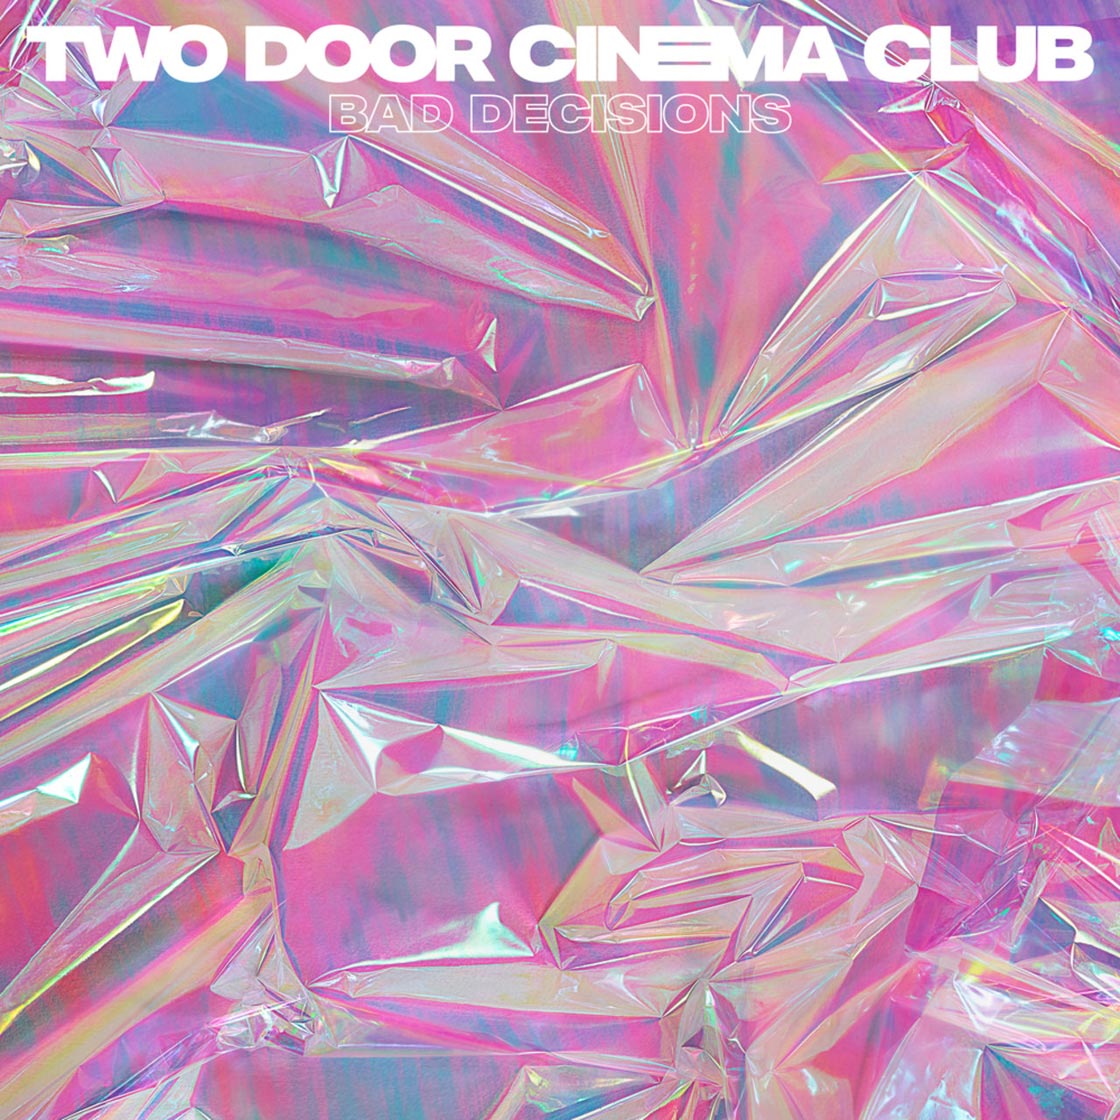 Two door cinema club: Bad decisions, la portada de la canción